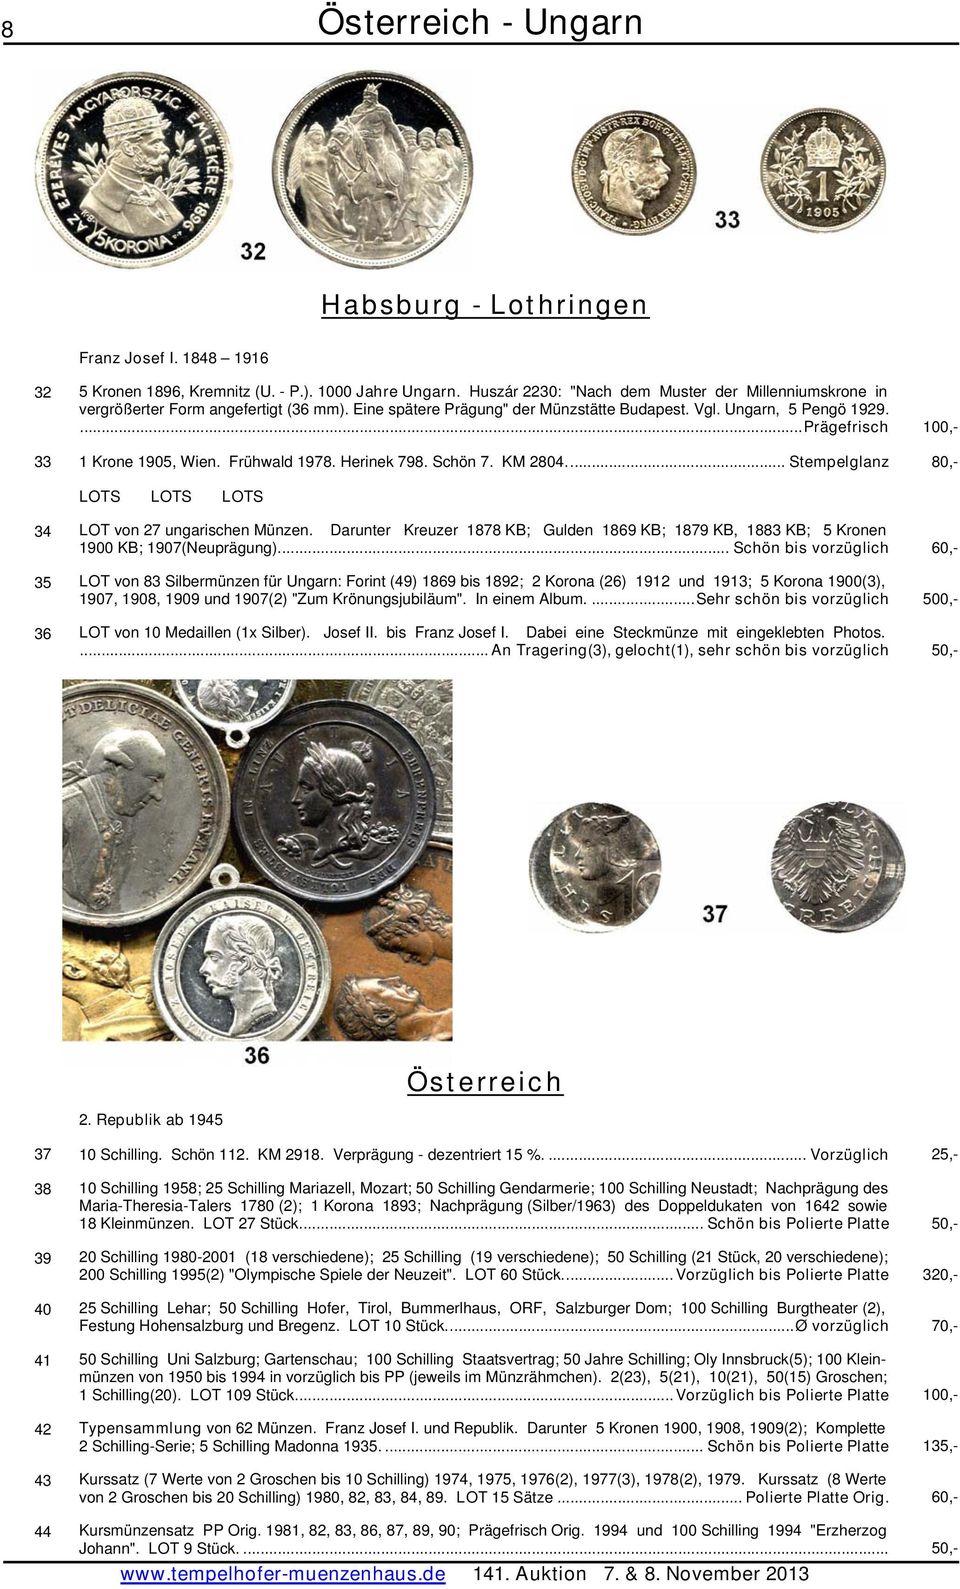 .. Stempelglanz 80,- LOTS LOTS LOTS 34 LOT von 27 ungarischen Münzen. Darunter Kreuzer 1878 KB; Gulden 1869 KB; 1879 KB, 1883 KB; 5 Kronen 1900 KB; 1907(Neuprägung).